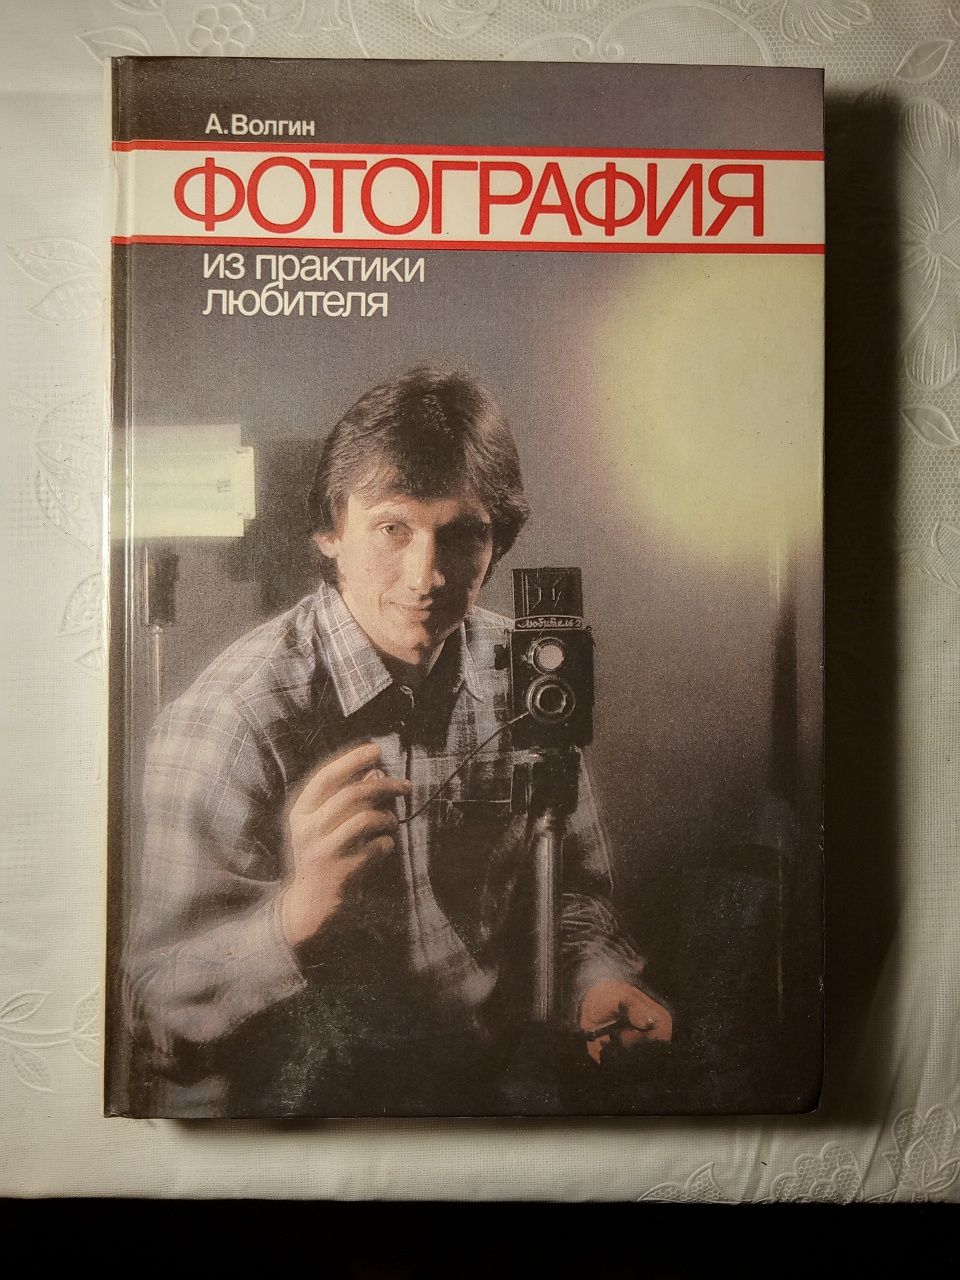 Фотография, А. Волгин, 1988 год издания